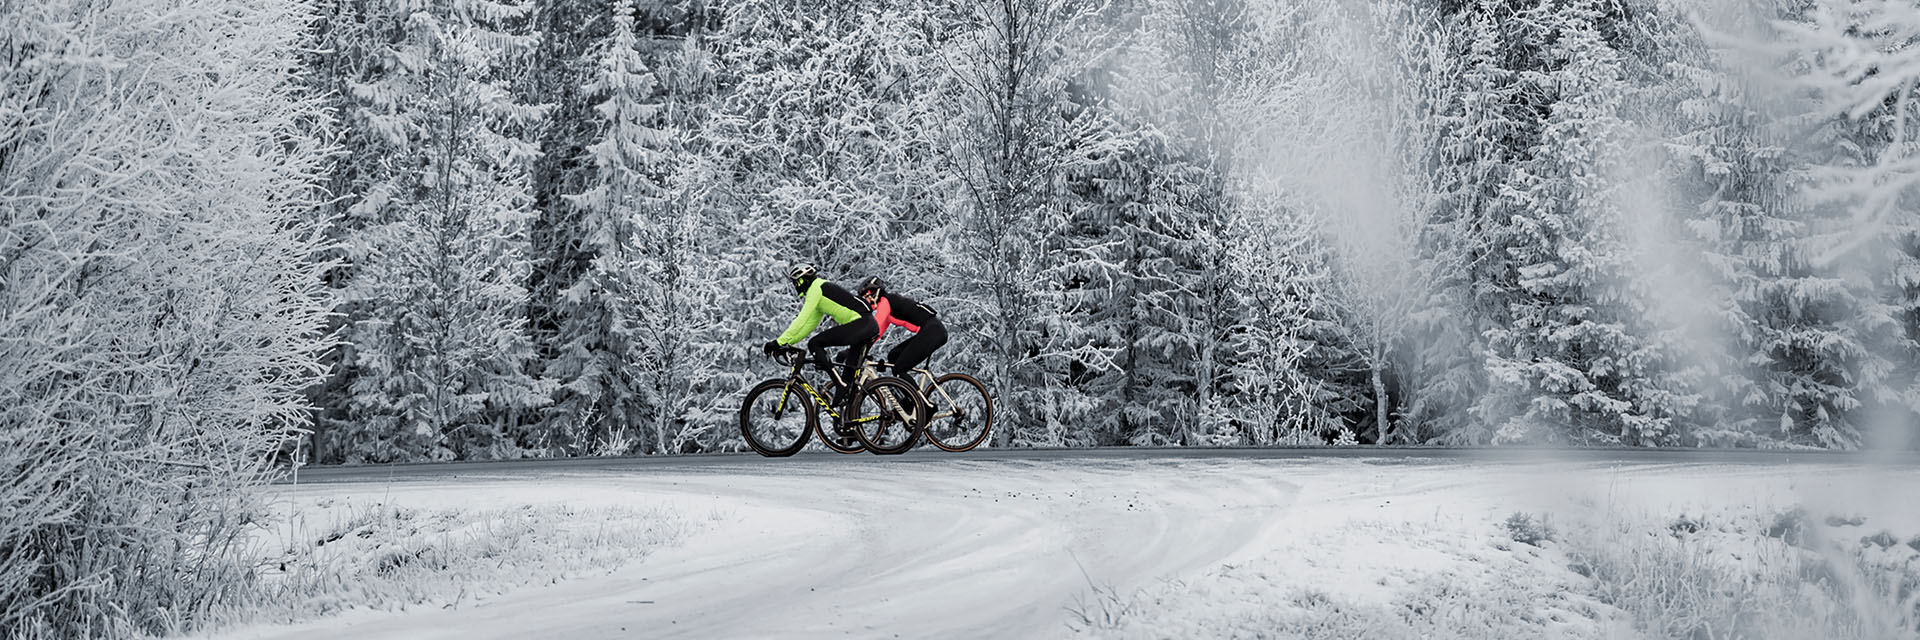 Come vestirsi per andare in bicicletta in inverno? Consigli ed indicazioni